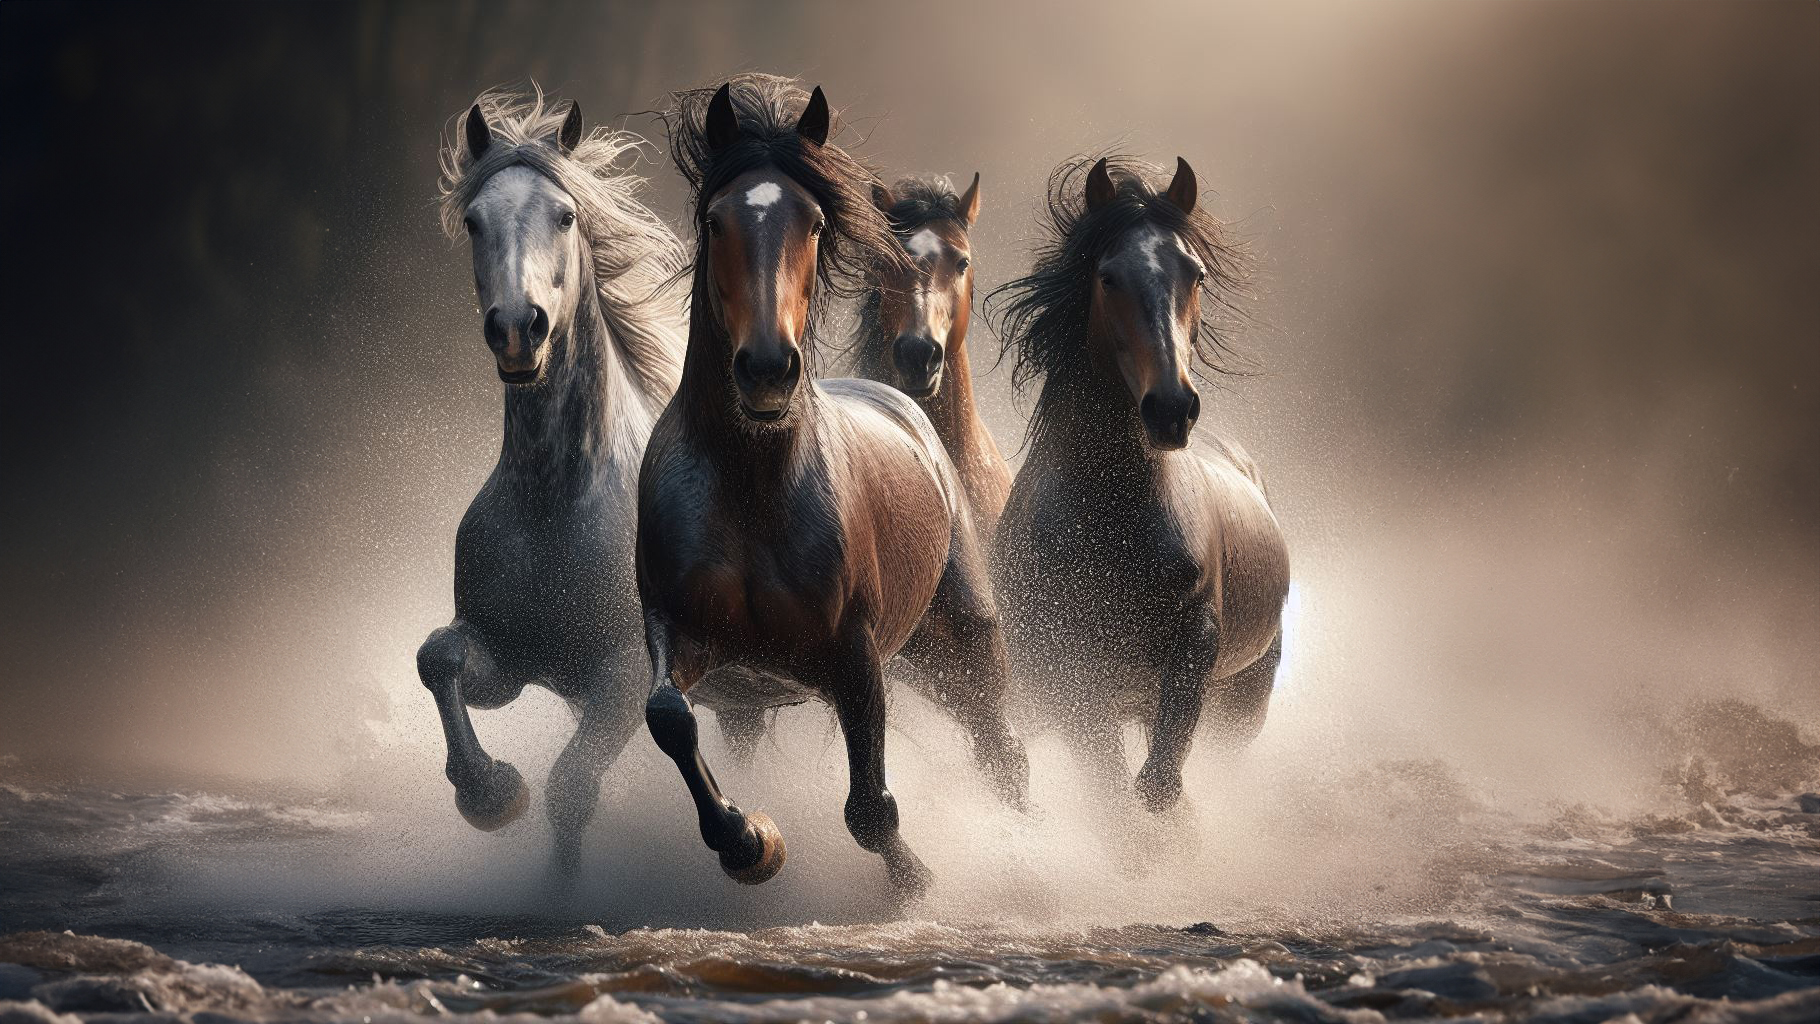 Horses Galloping